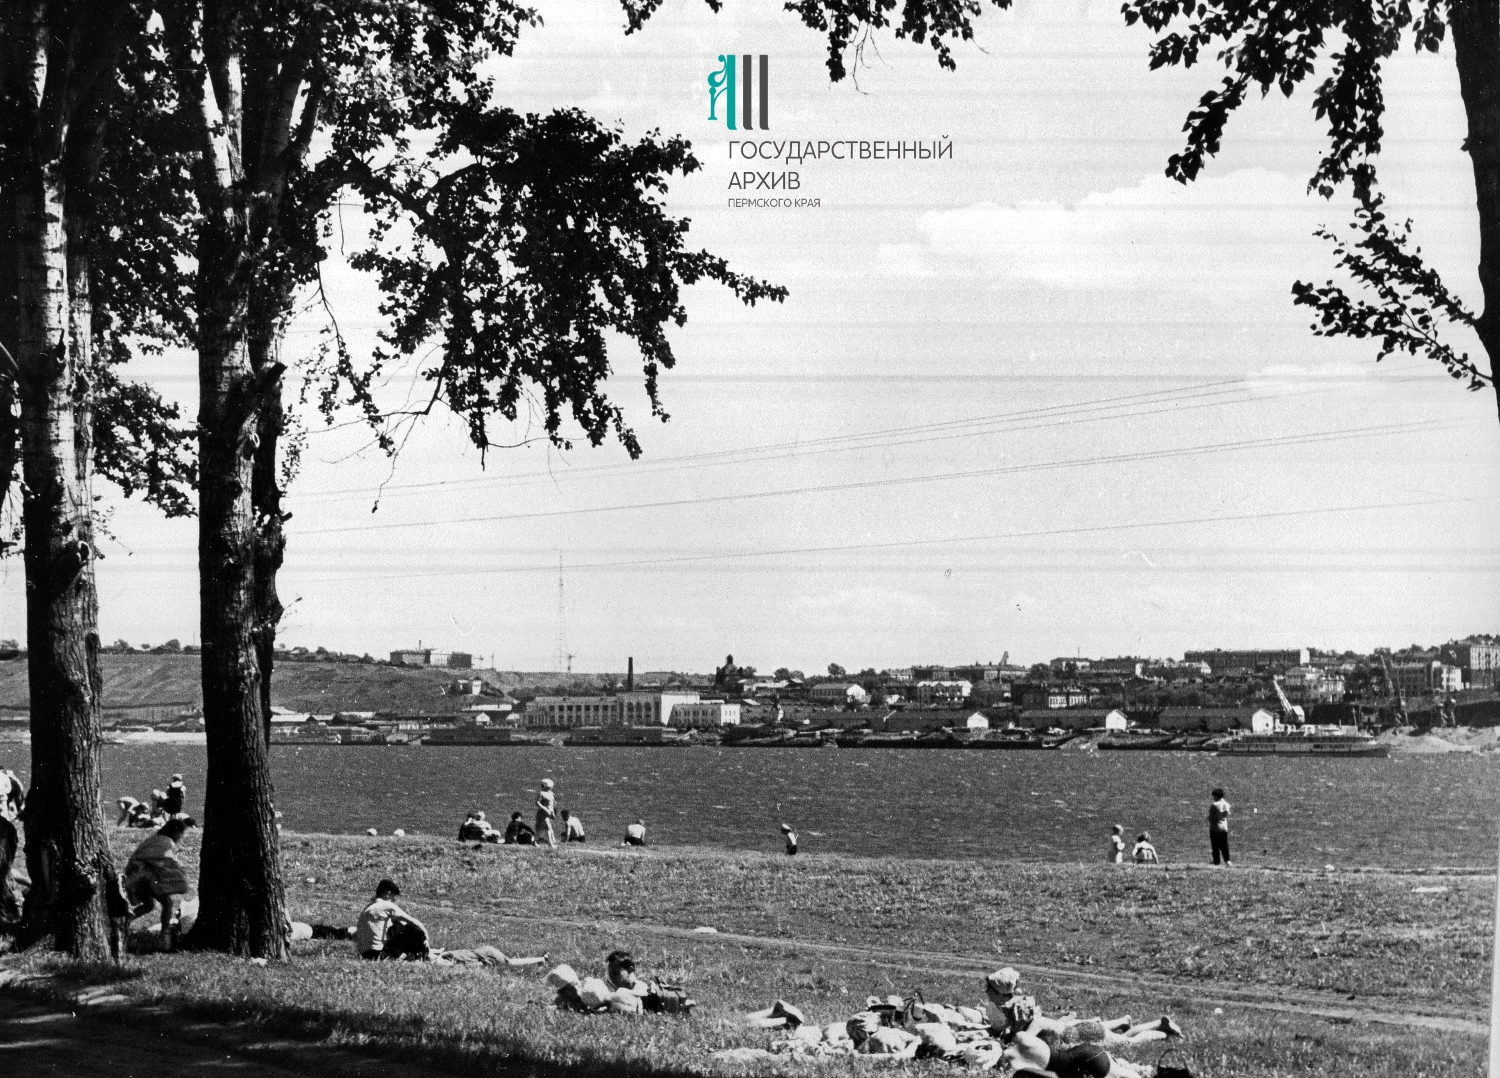 ФФ.Оп.61п.Д.05501.Вид на речной вокзал.,Пермь,1960г.jpg